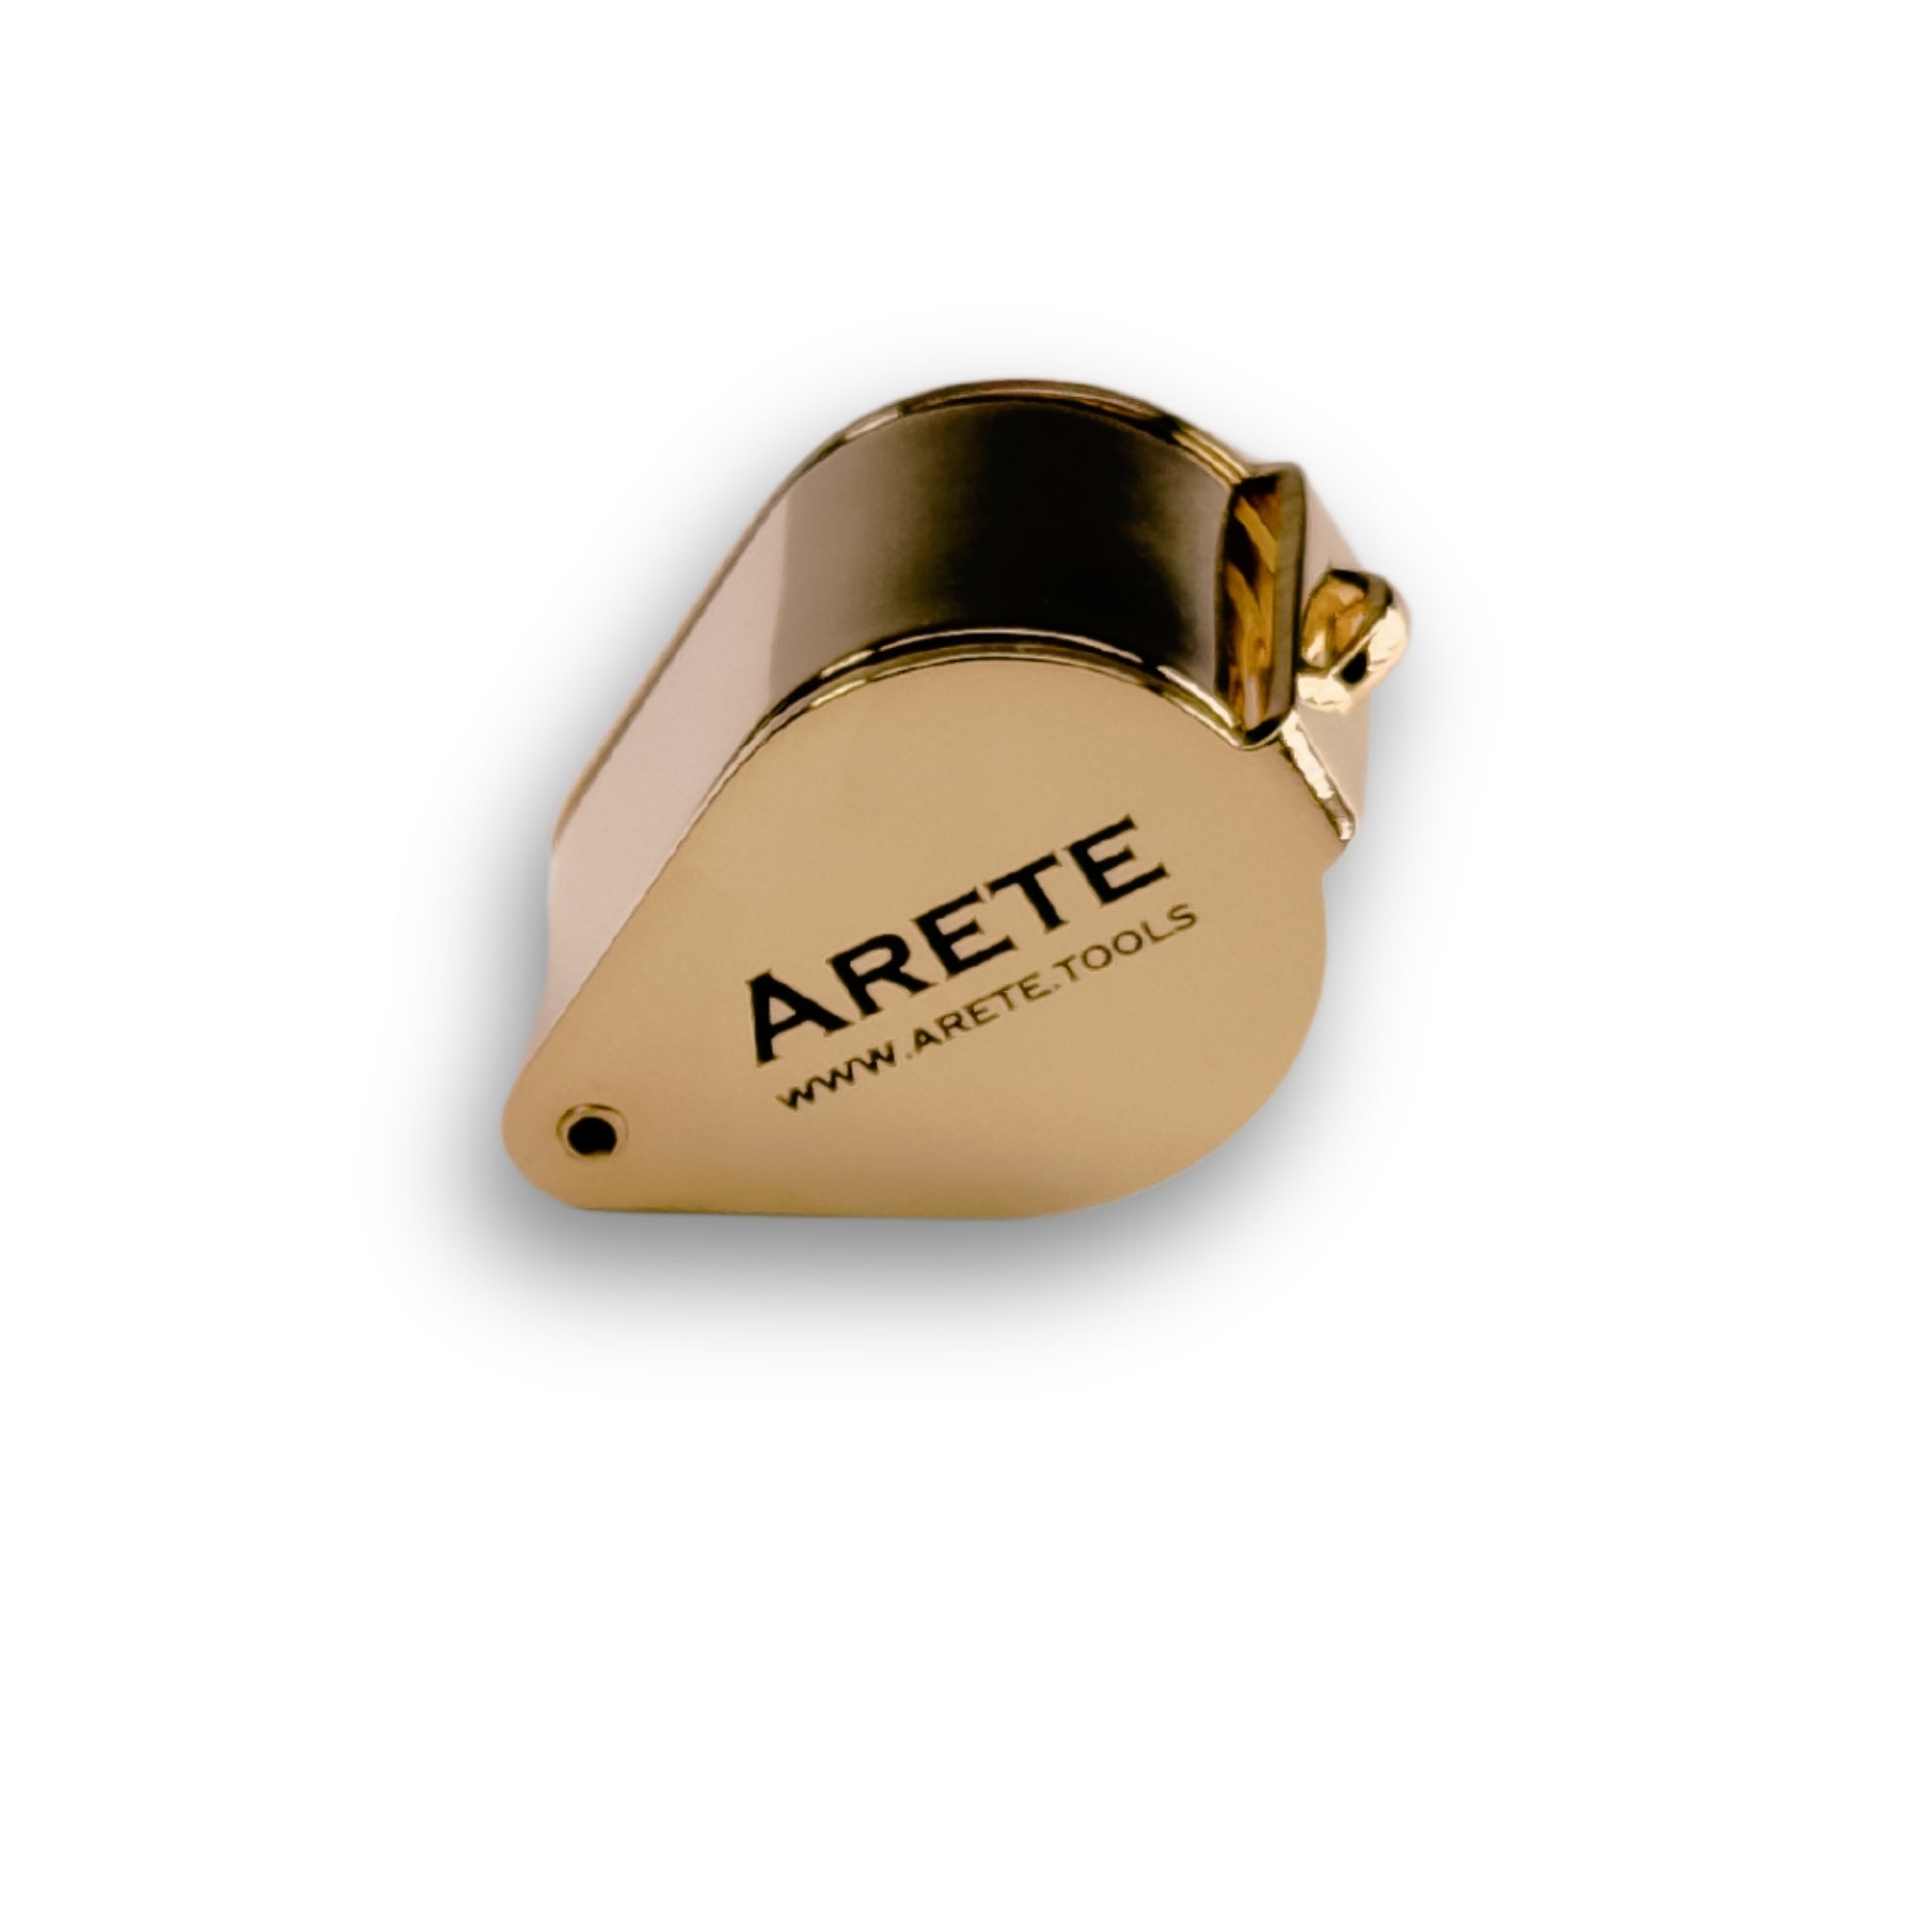 Šperkařská lupa Arete zlatá 10x 18 mm